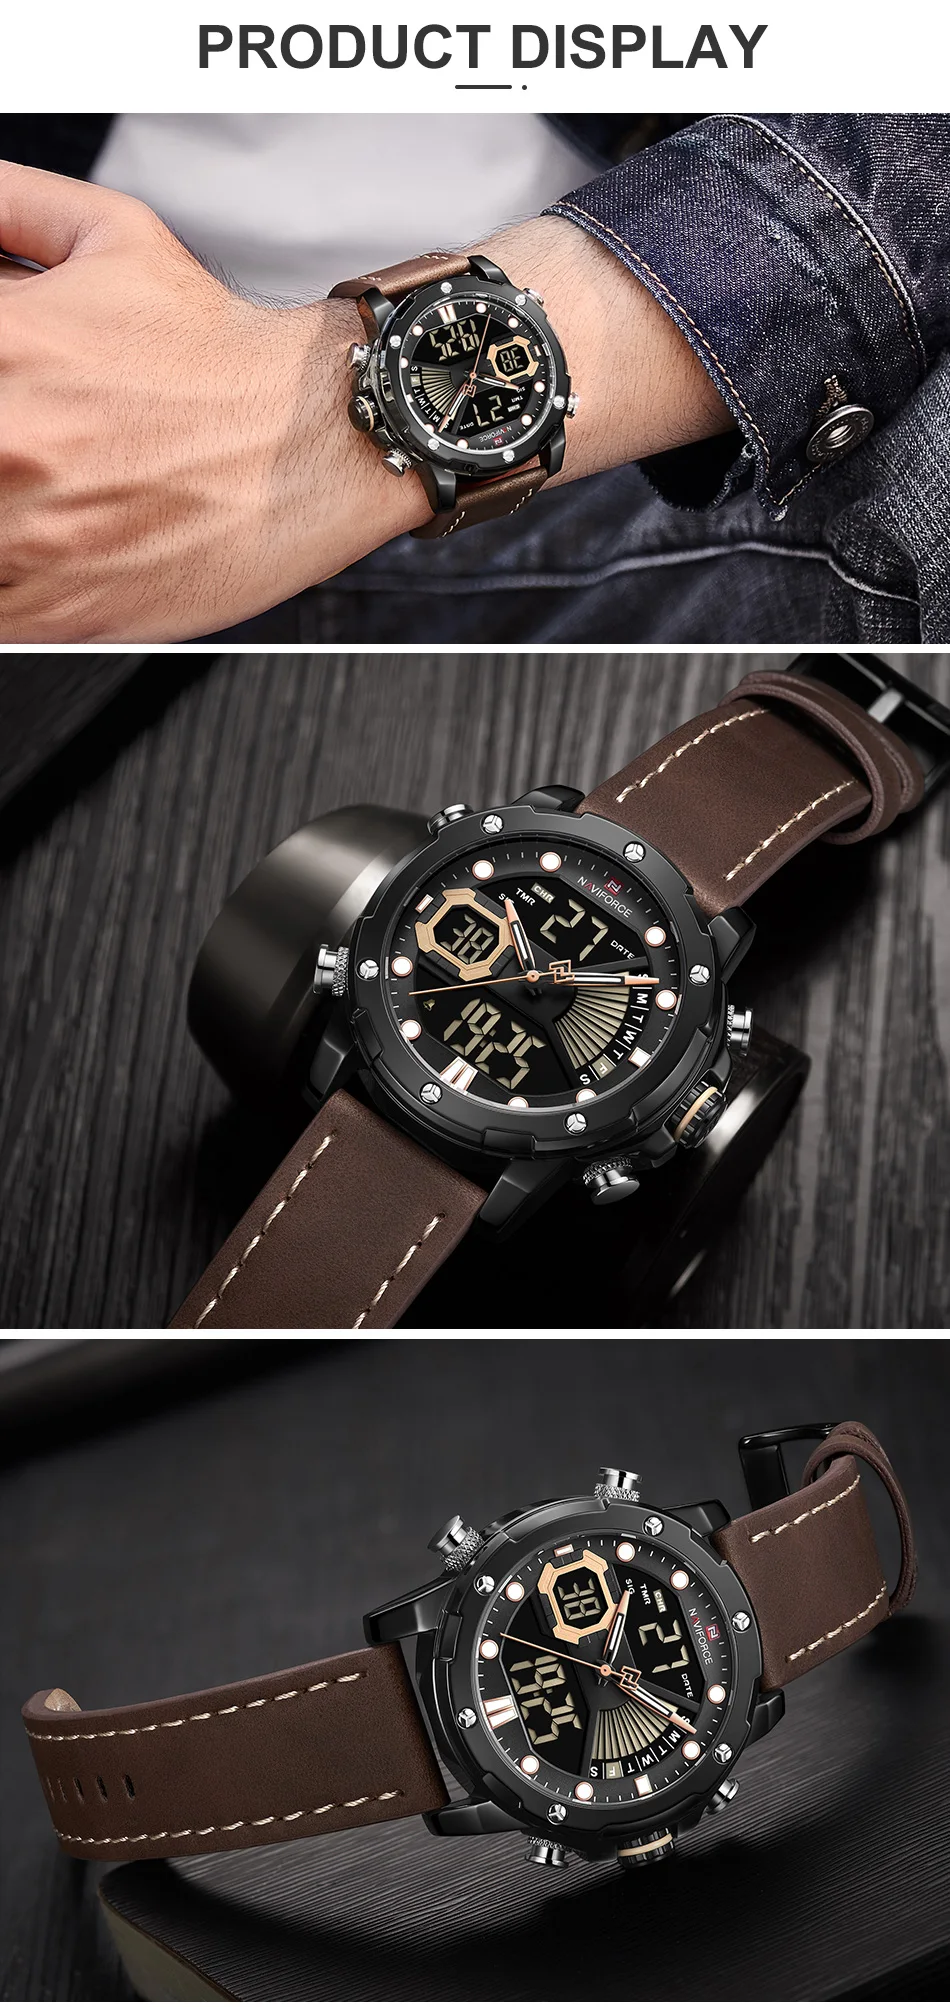 Мужские часы Топ люксовый бренд NAVIFORCE модные кварцевые часы с двойным дисплеем Мужские Аналоговые цифровые водонепроницаемые часы Relogio Masculino